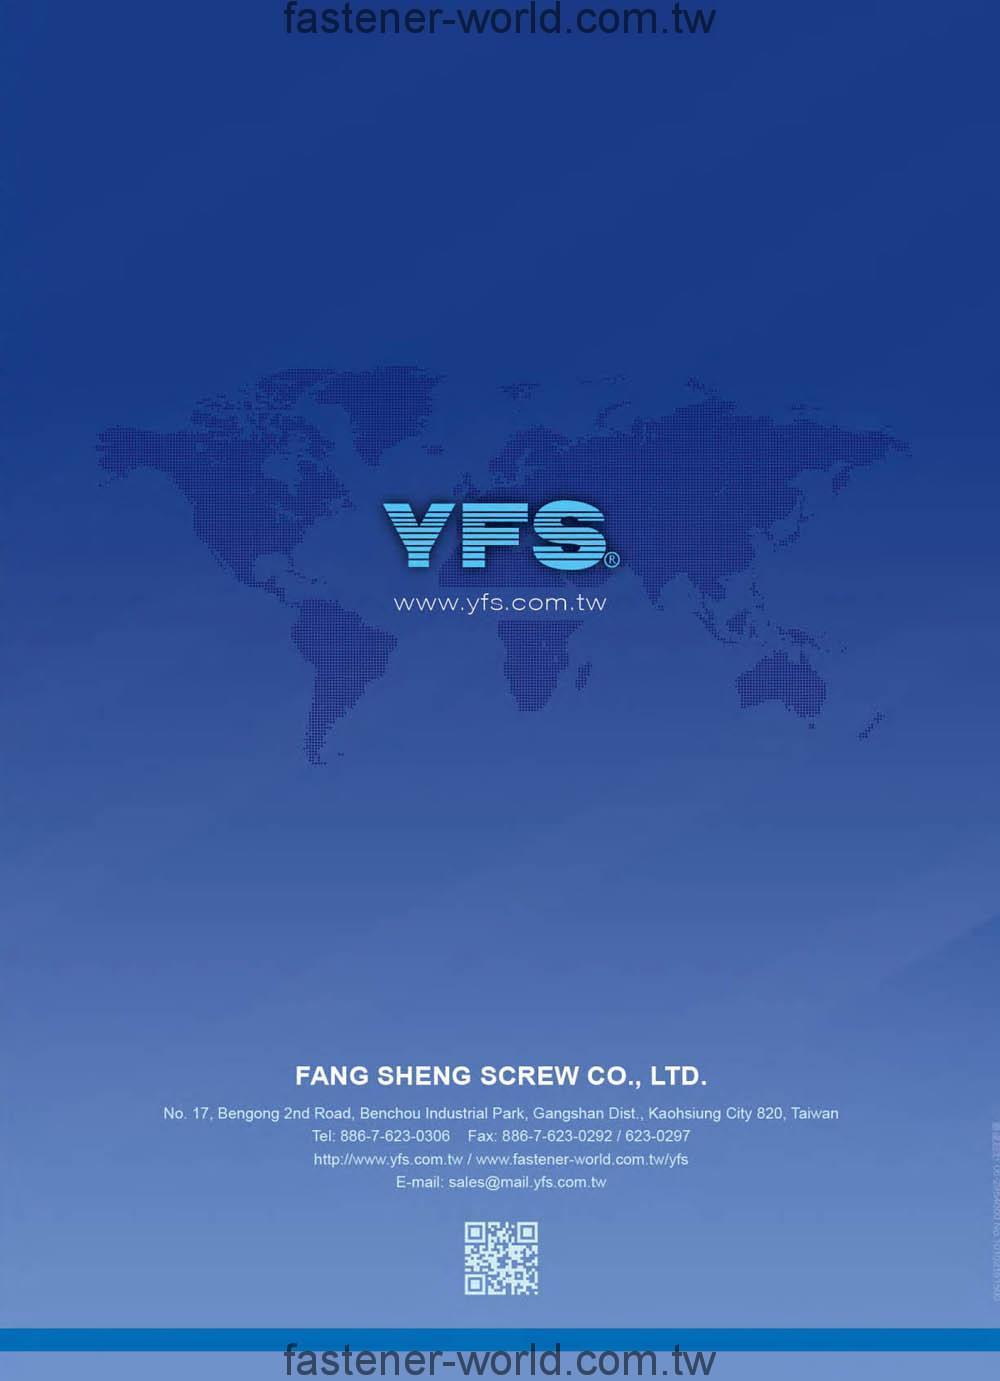 FANG SHENG SCREW CO., LTD. (YFS) Online Catalogues